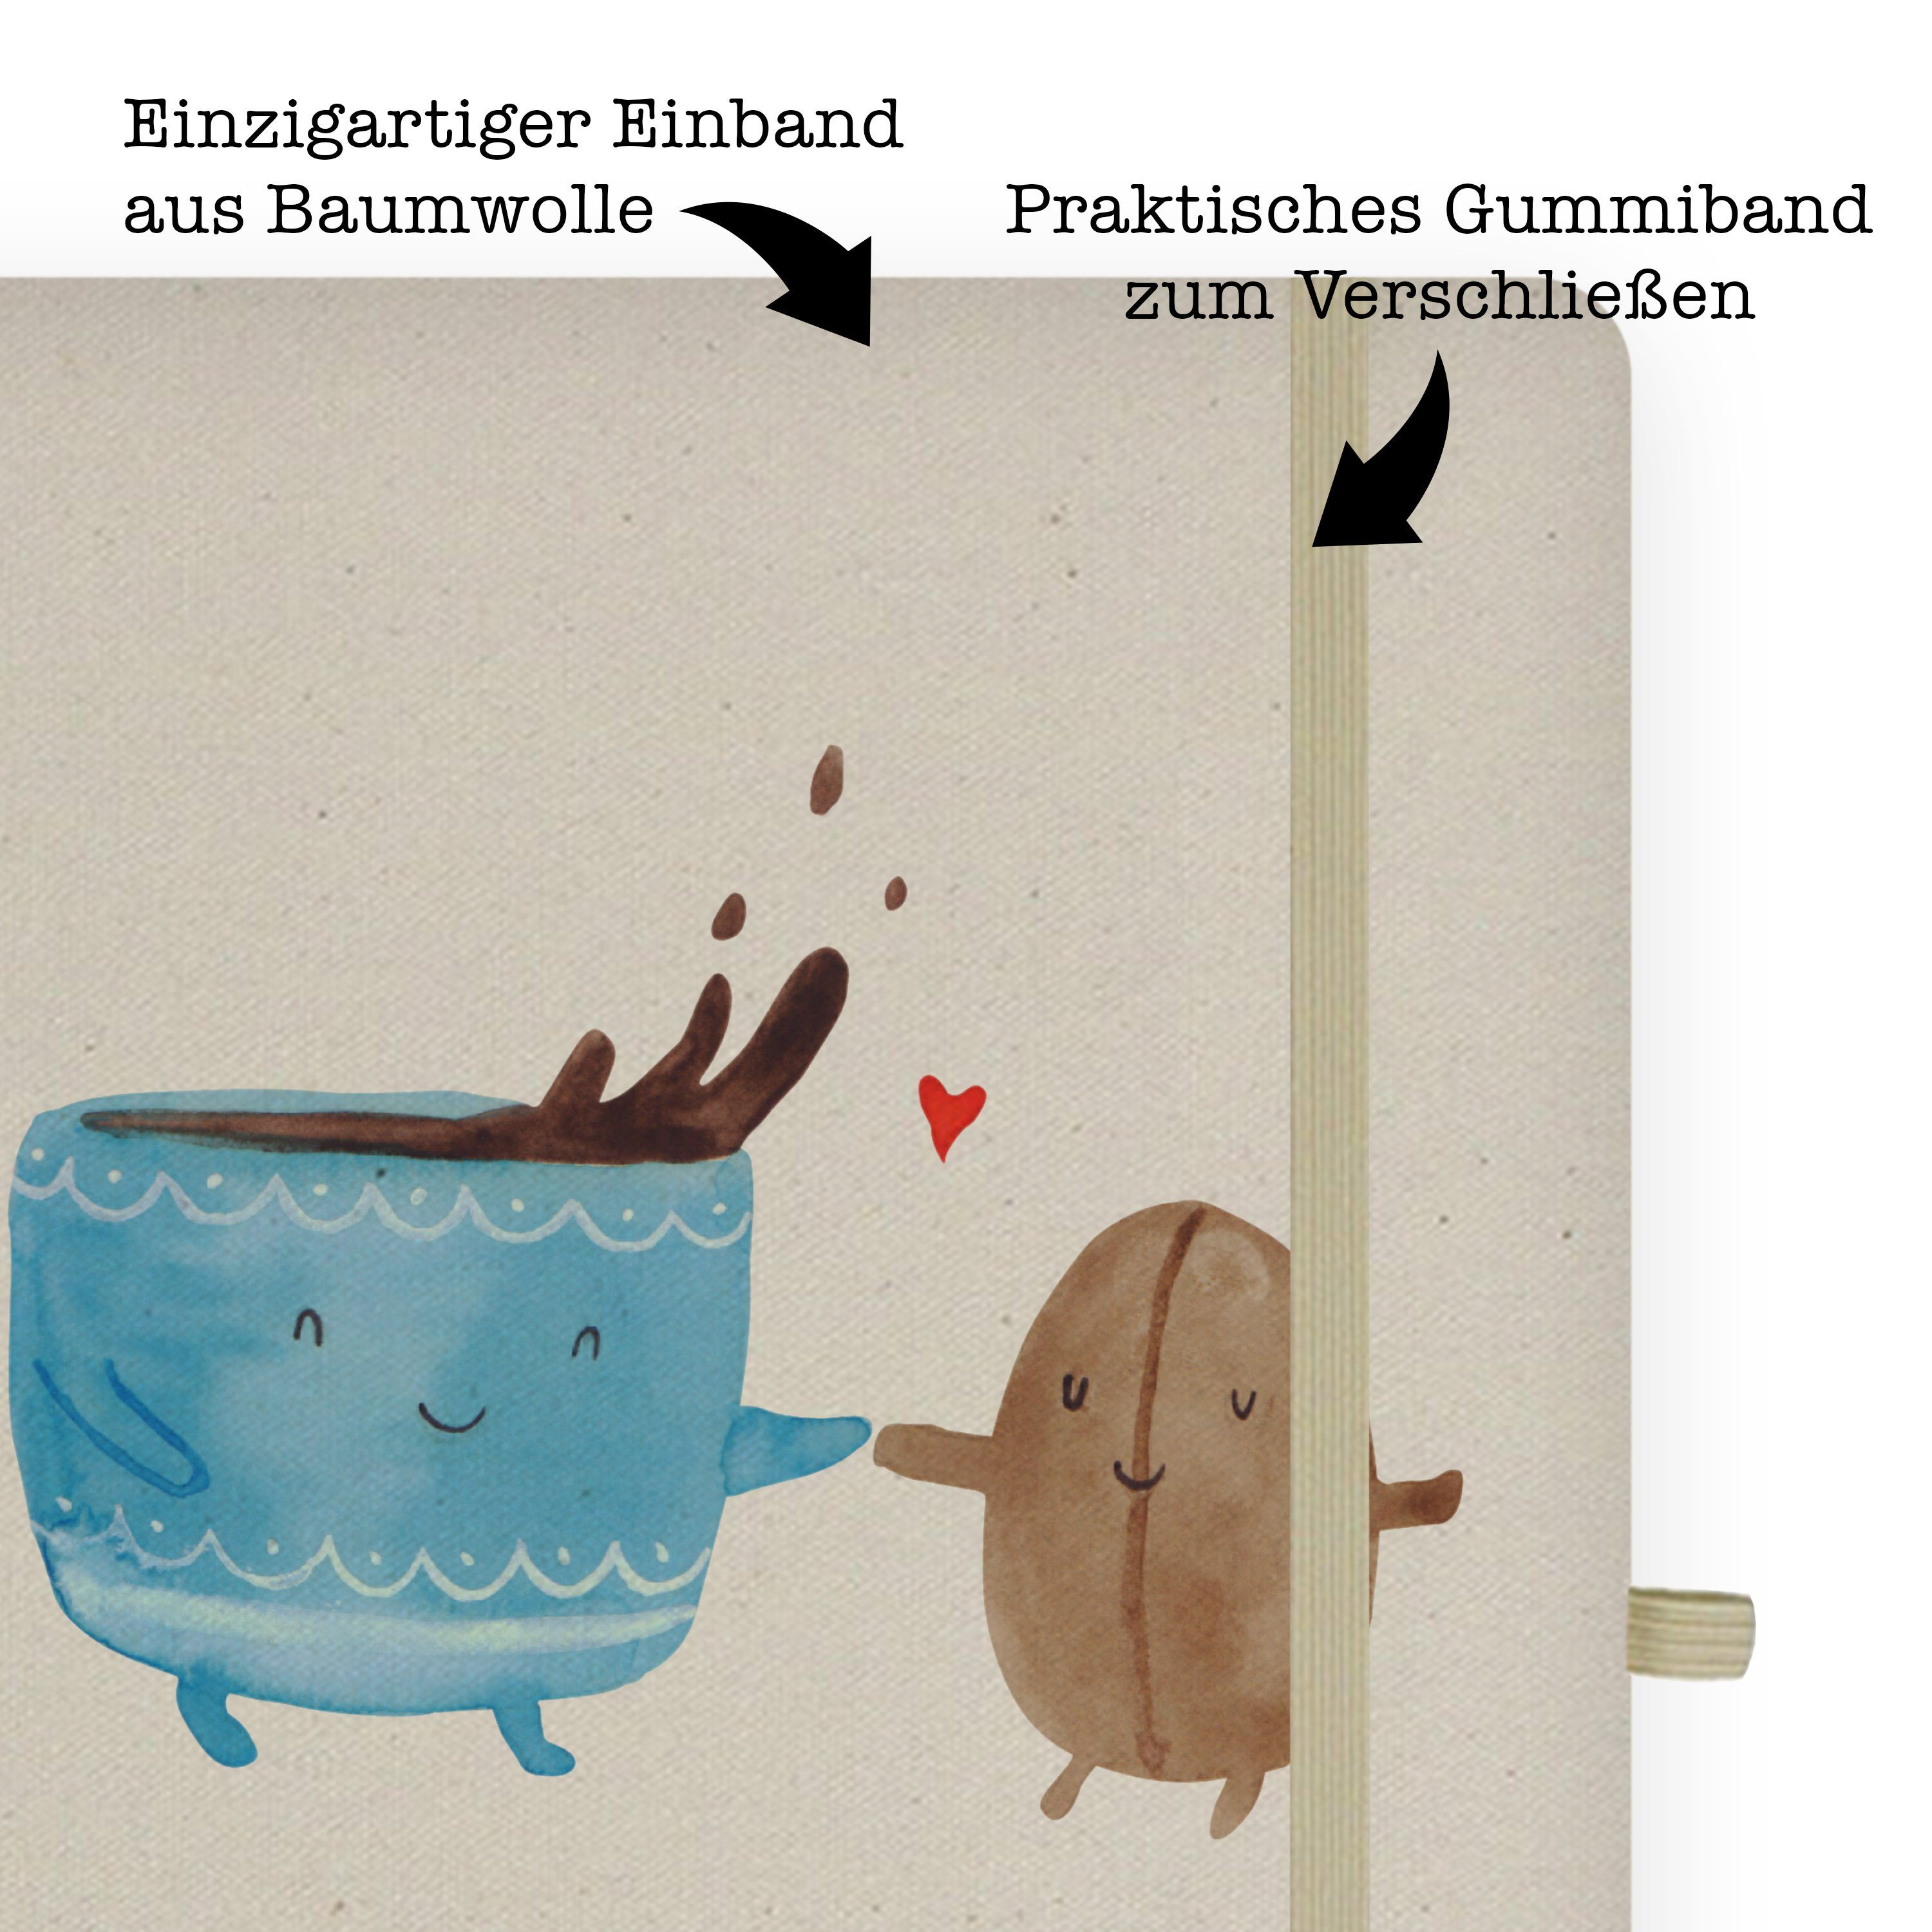 Mr. Panda Gu Adressbuch, Mrs. Panda Geschenk, - Kaffee Glück, Transparent & Bohne Notizbuch Journal, & Mrs. - Mr.